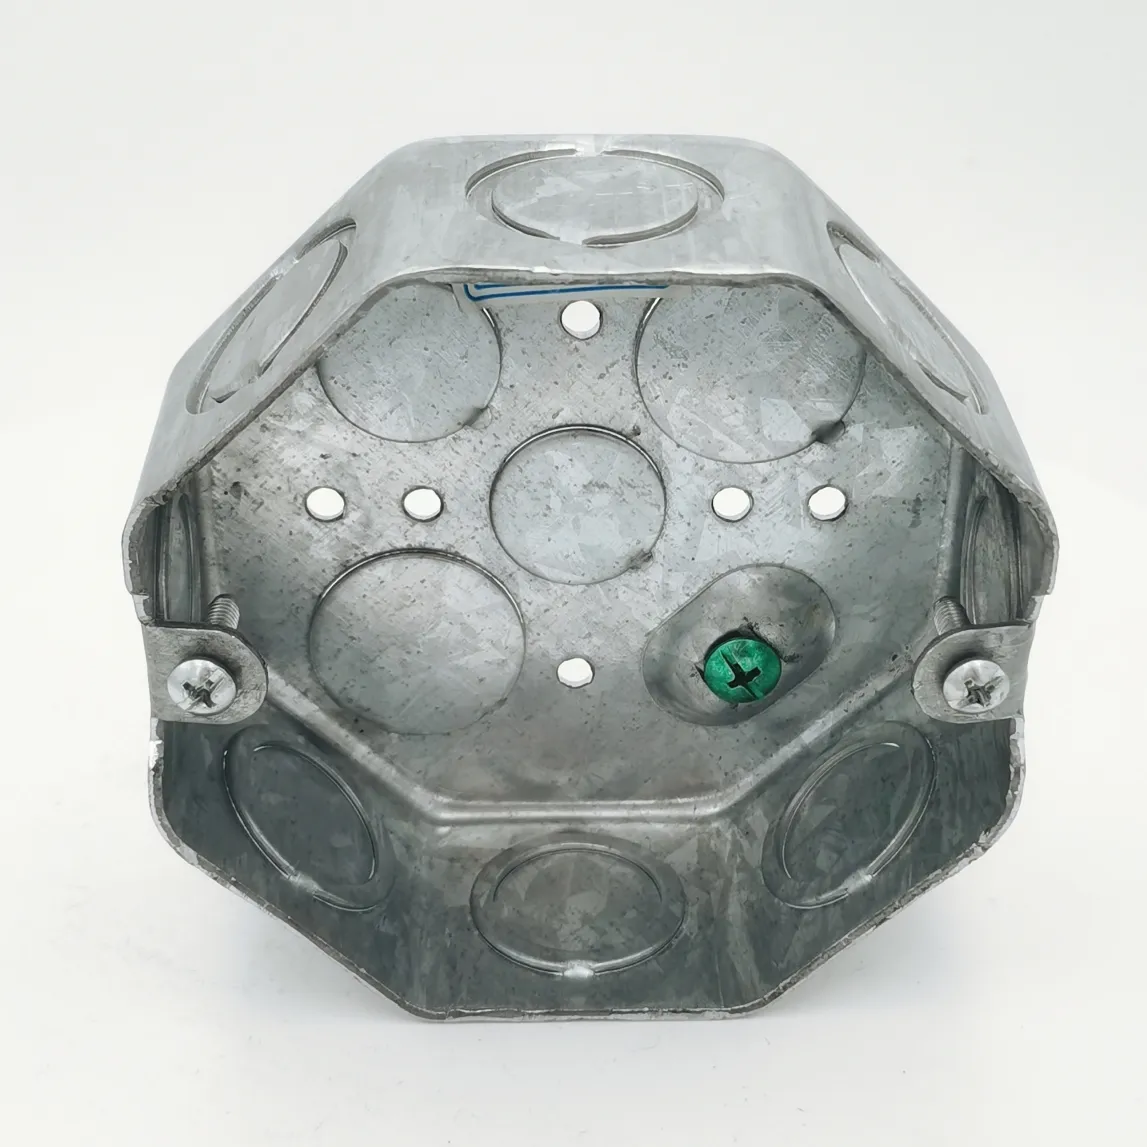 Octagonal de 4 "y 42mm de profundidad, con Couduit Ko y conexión a tierra elevada en el fondo, conducto de acero, caja eléctrica de unión